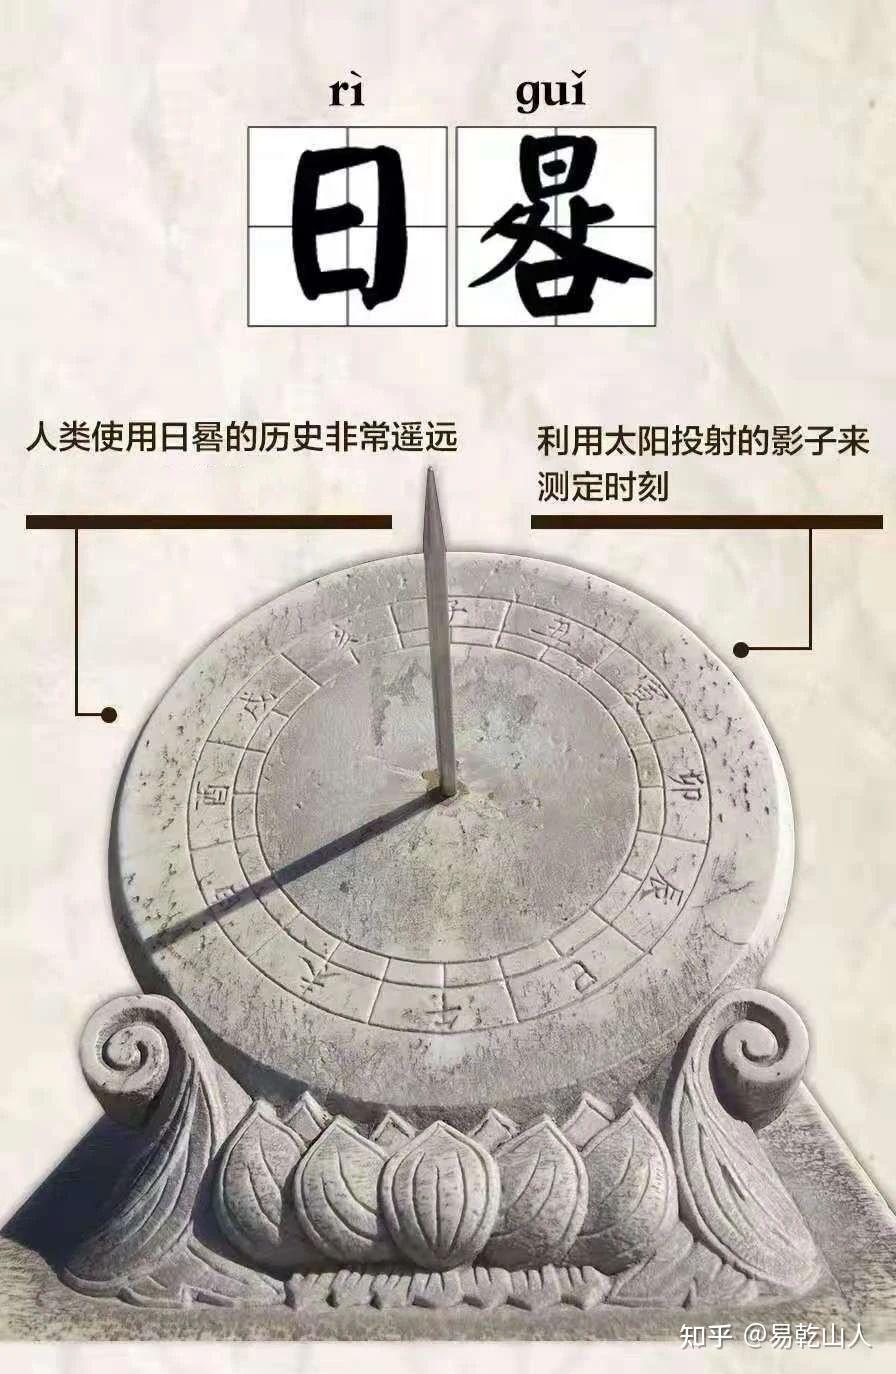 【日晷】在古代是如何计时的?